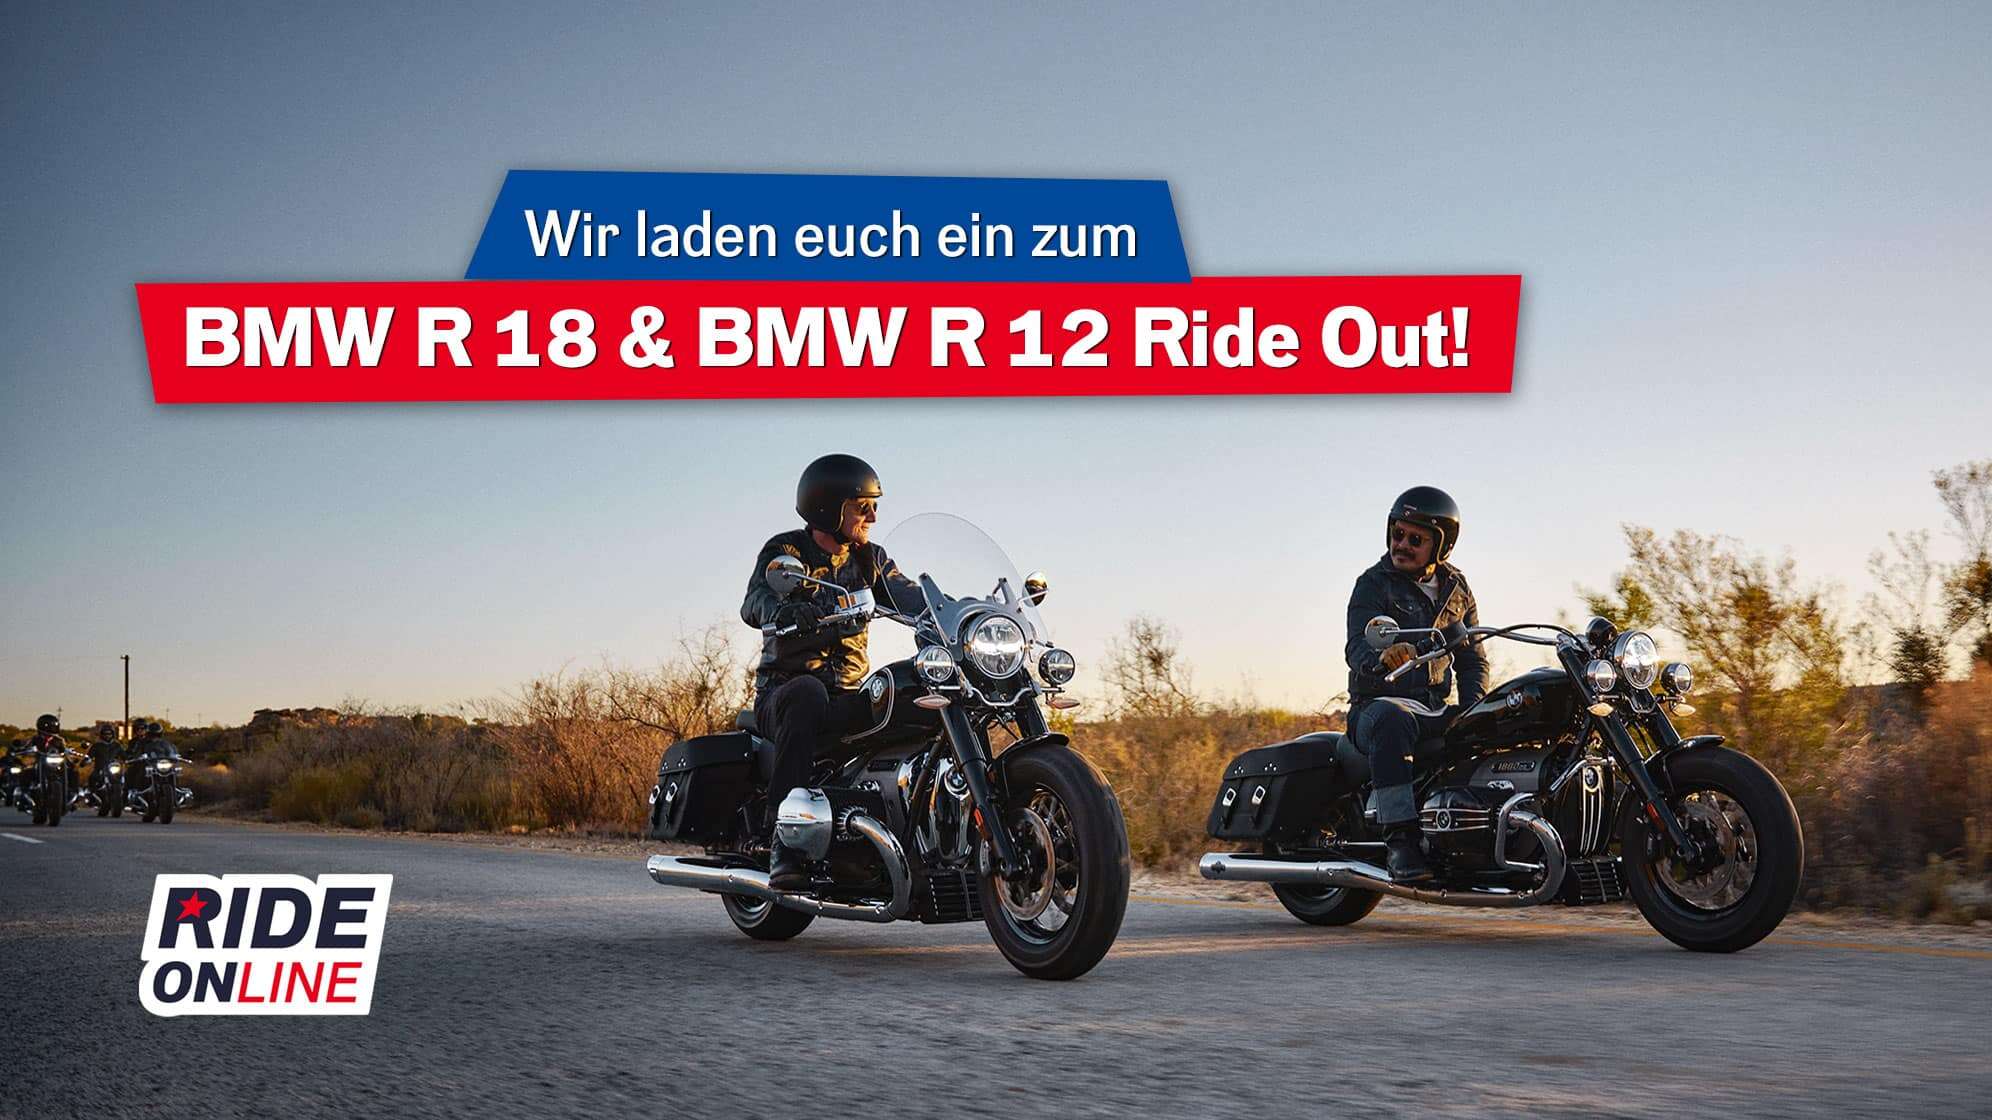 Unser exklusiver BMW R 18 & R 12 Ride Out am 16.06. - jetzt bewerben!